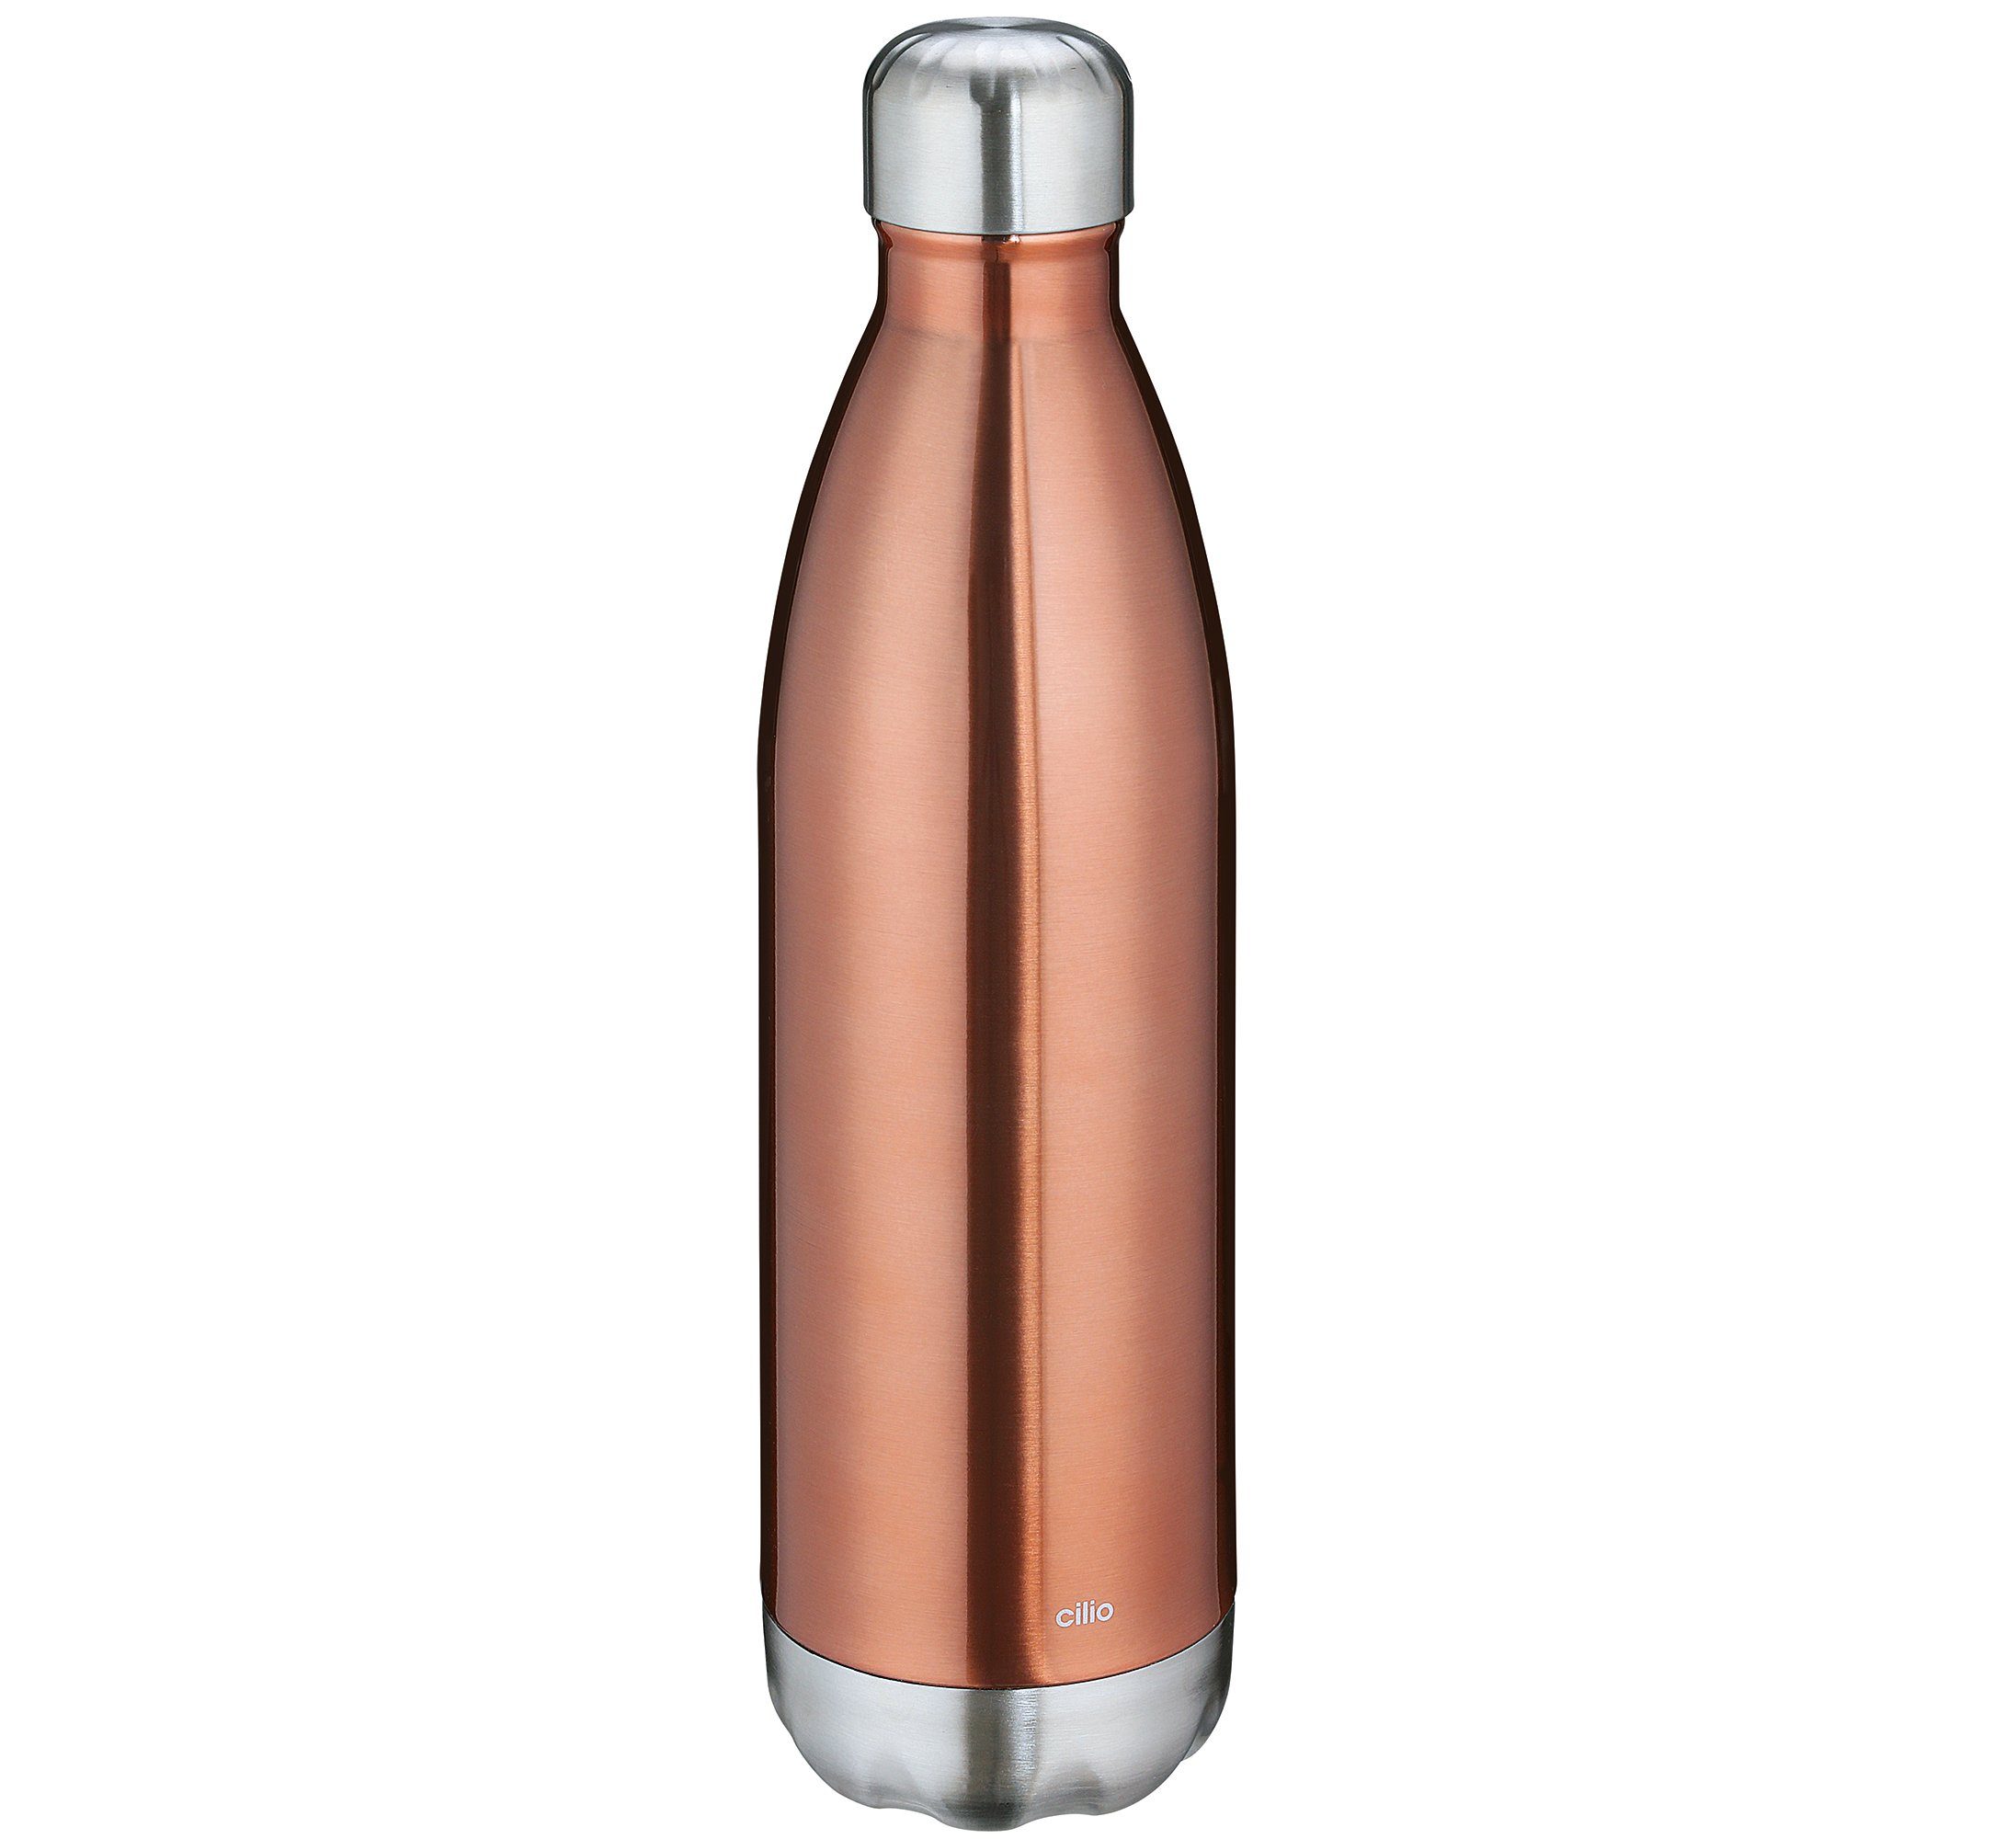 Cilio Thermoflasche Trinkflasche Isoliertrinkflasche Edelstahl cilio ELEGANTE 0,75l